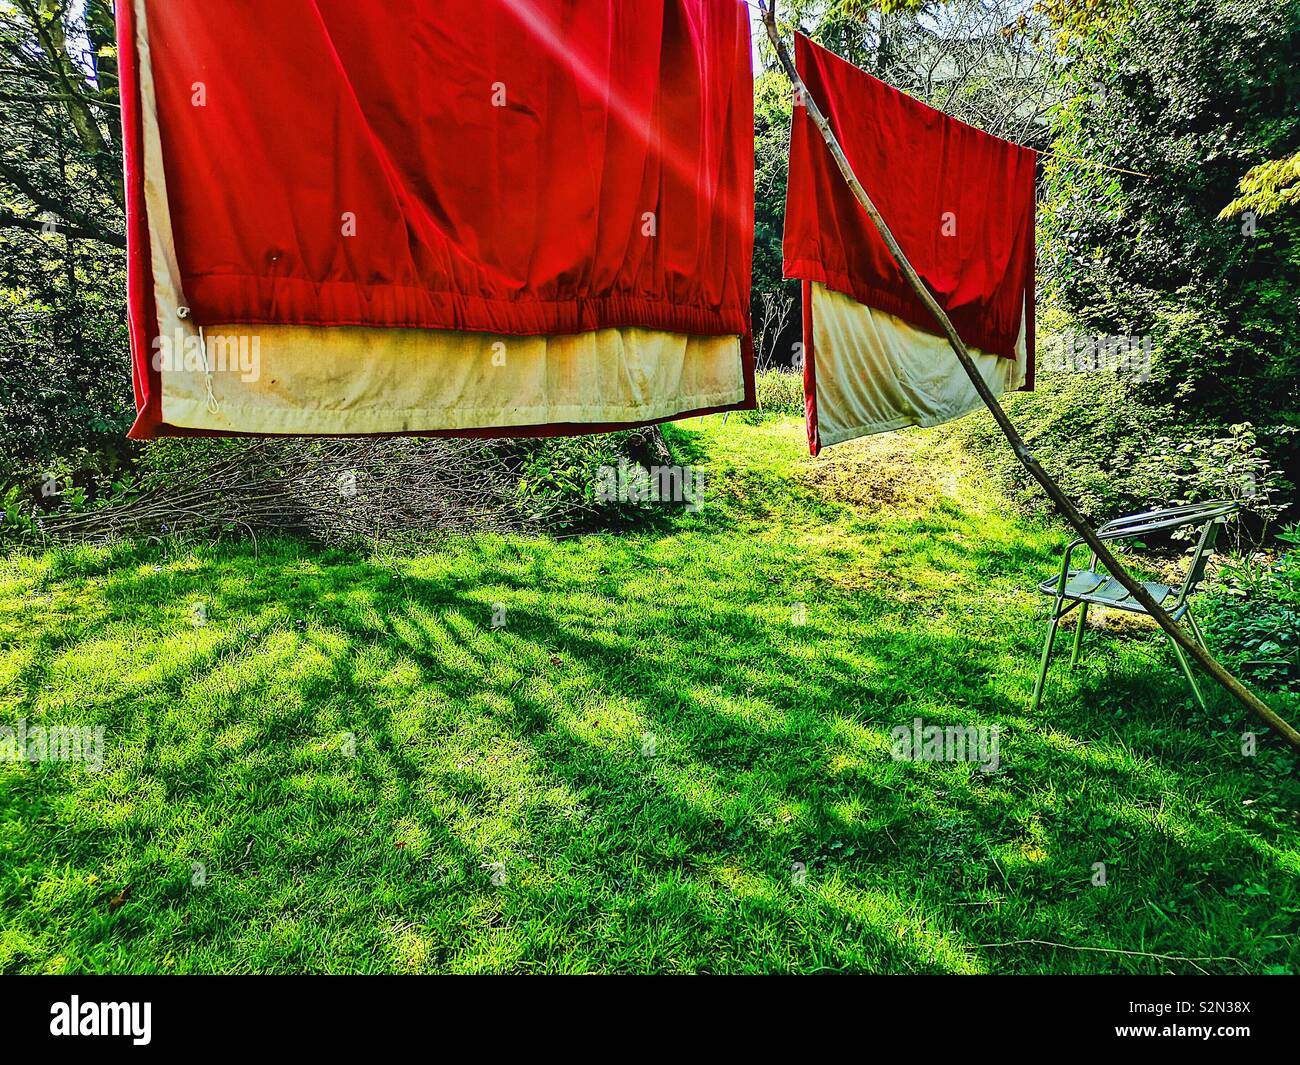 Tende rosse appese in giardino per rinfrescarsi, pulizia di primavera Foto Stock